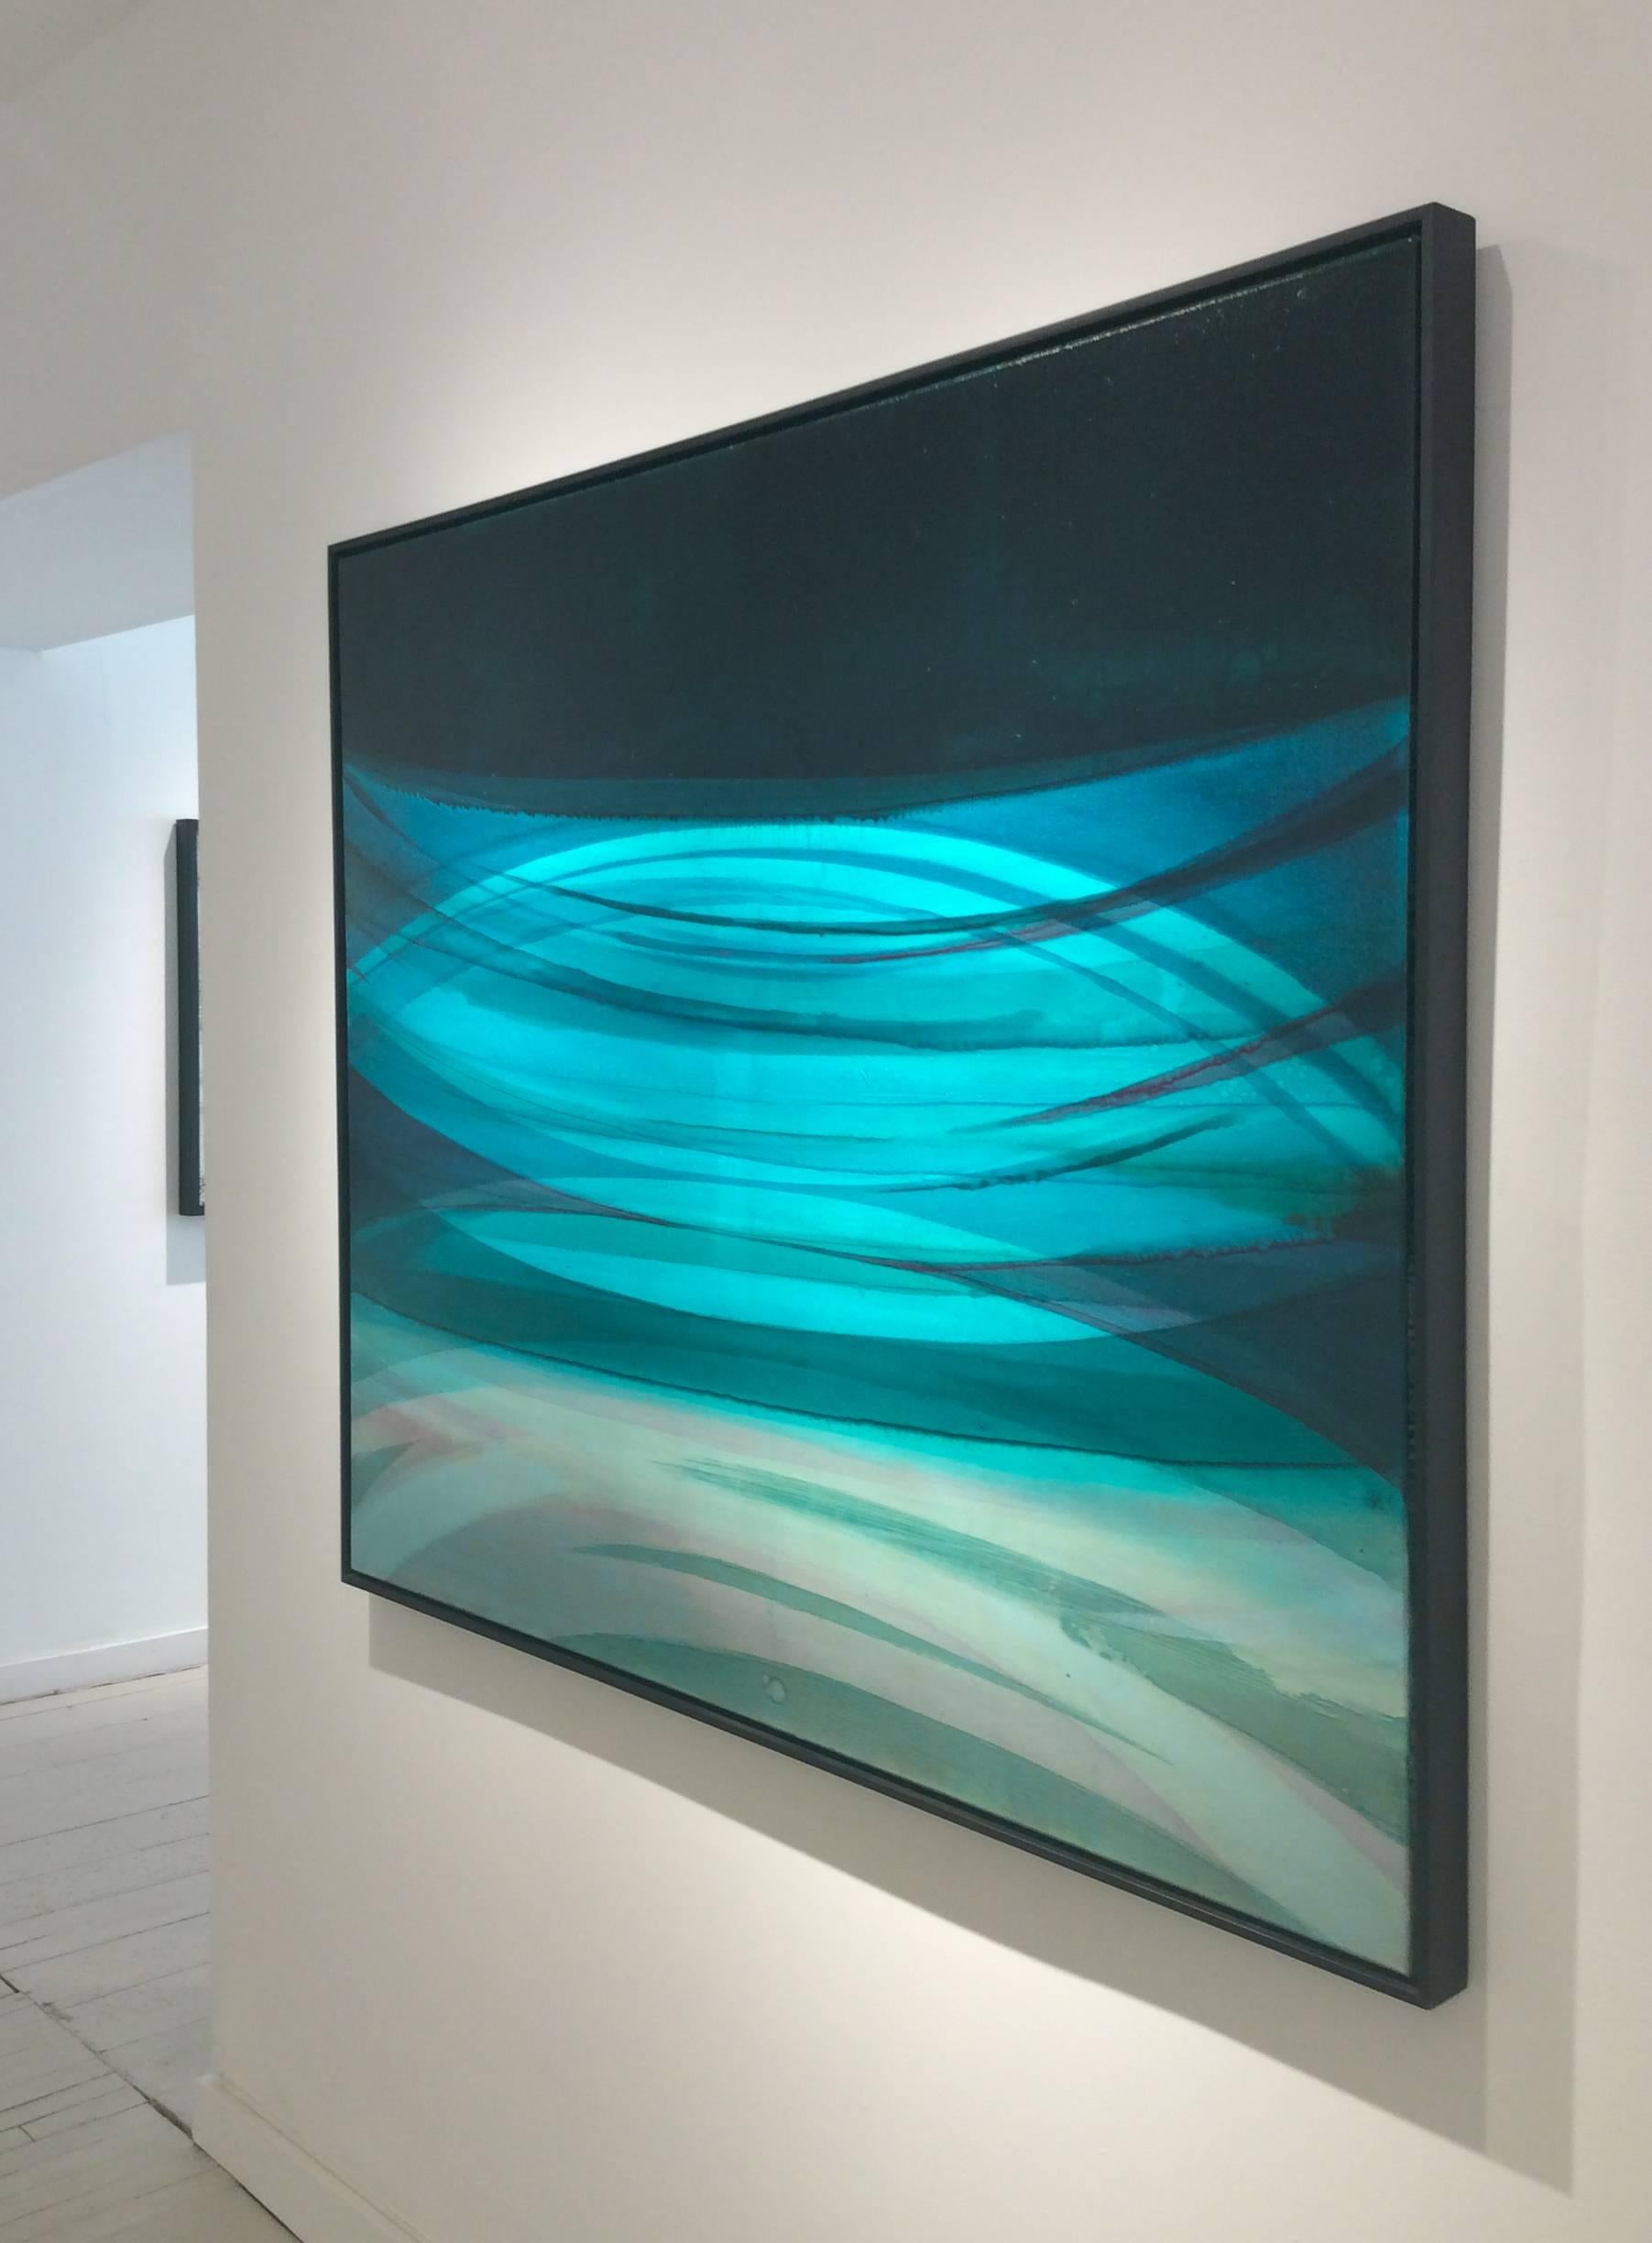 Peinture acrylique abstraite minimaliste horizontale dans des champs de couleur aqua, bleu profond et noir. 
huile et alkyde sur toile dans un cadre à encastrement en bois noir Larson Juhl

Inspiré par les pierres, les taches de la nature, l'érosion